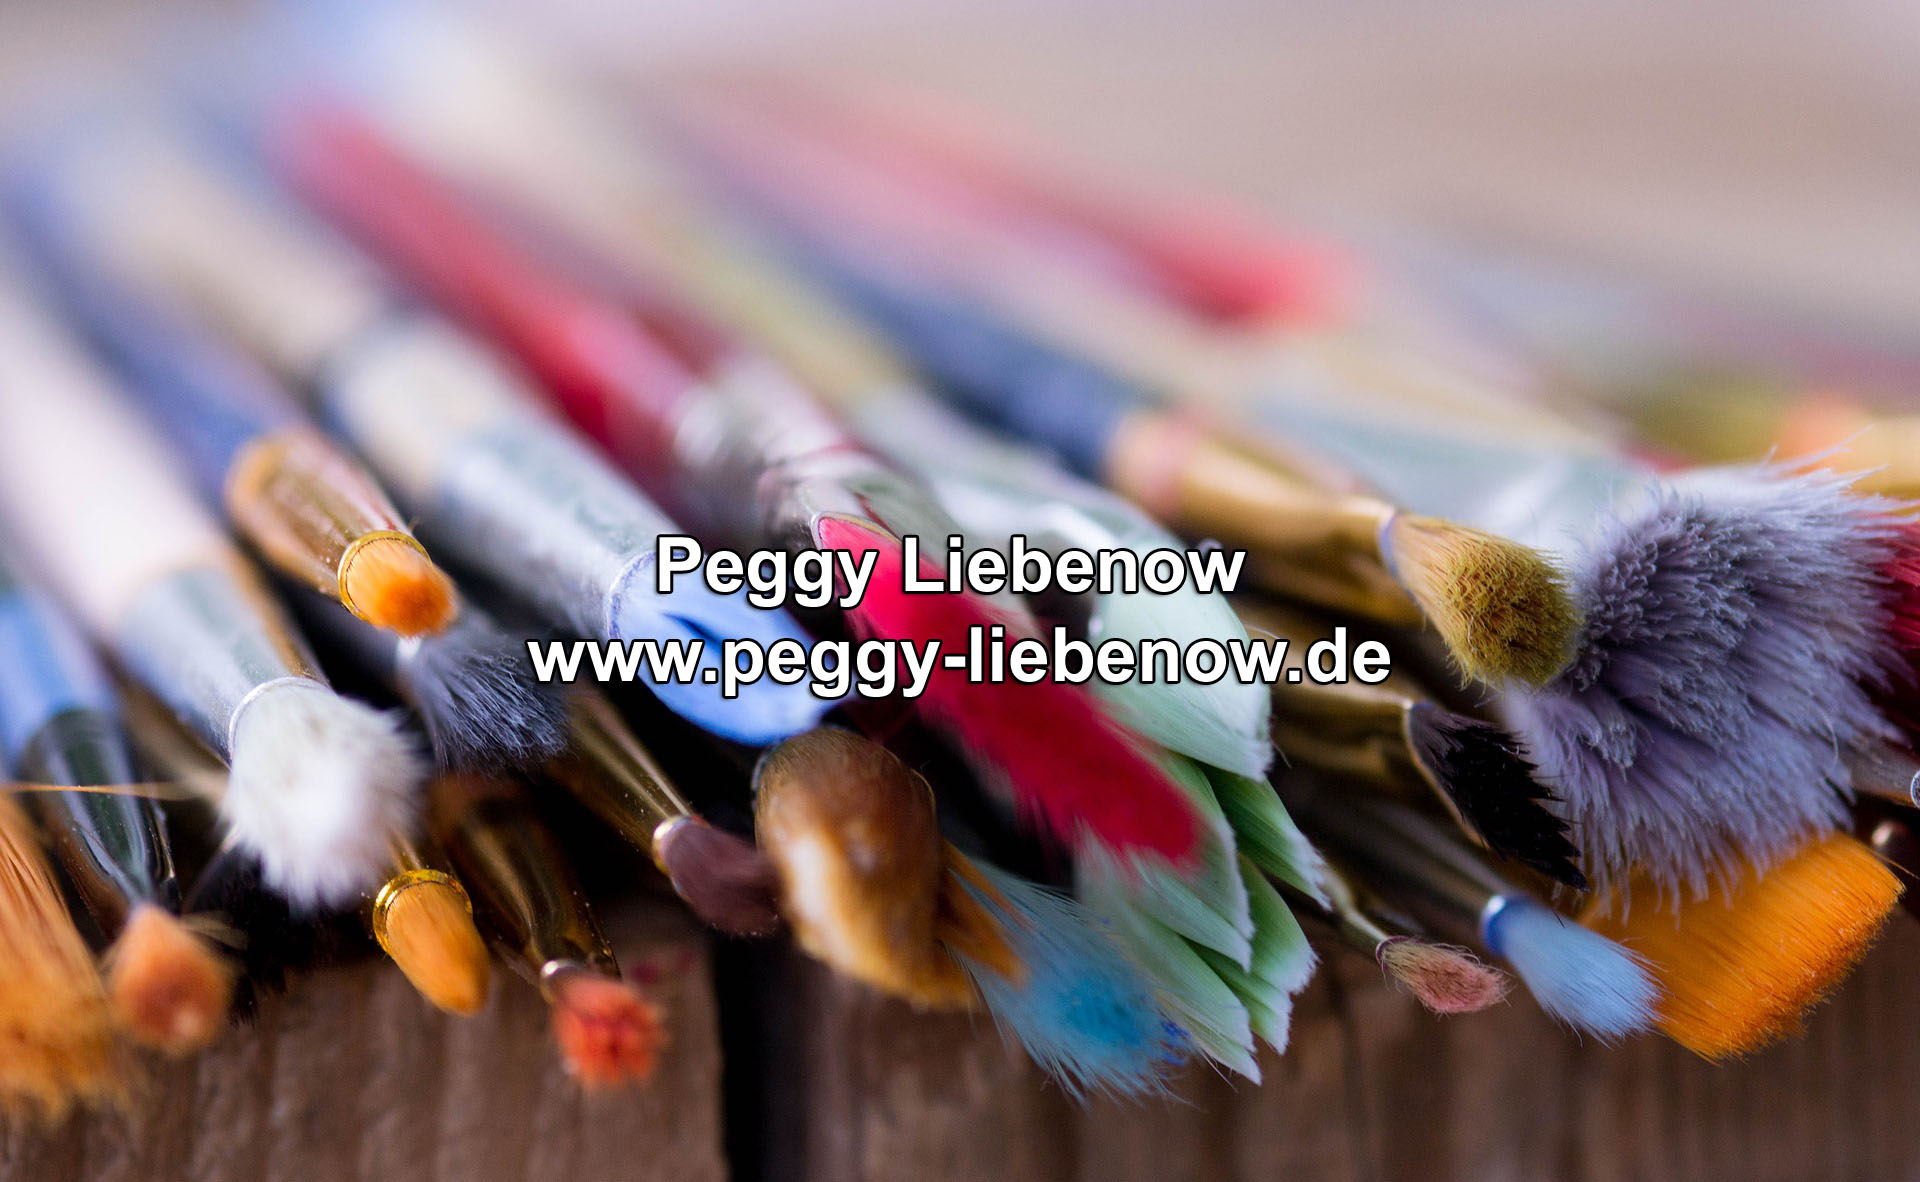 (c) Peggy-liebenow.de